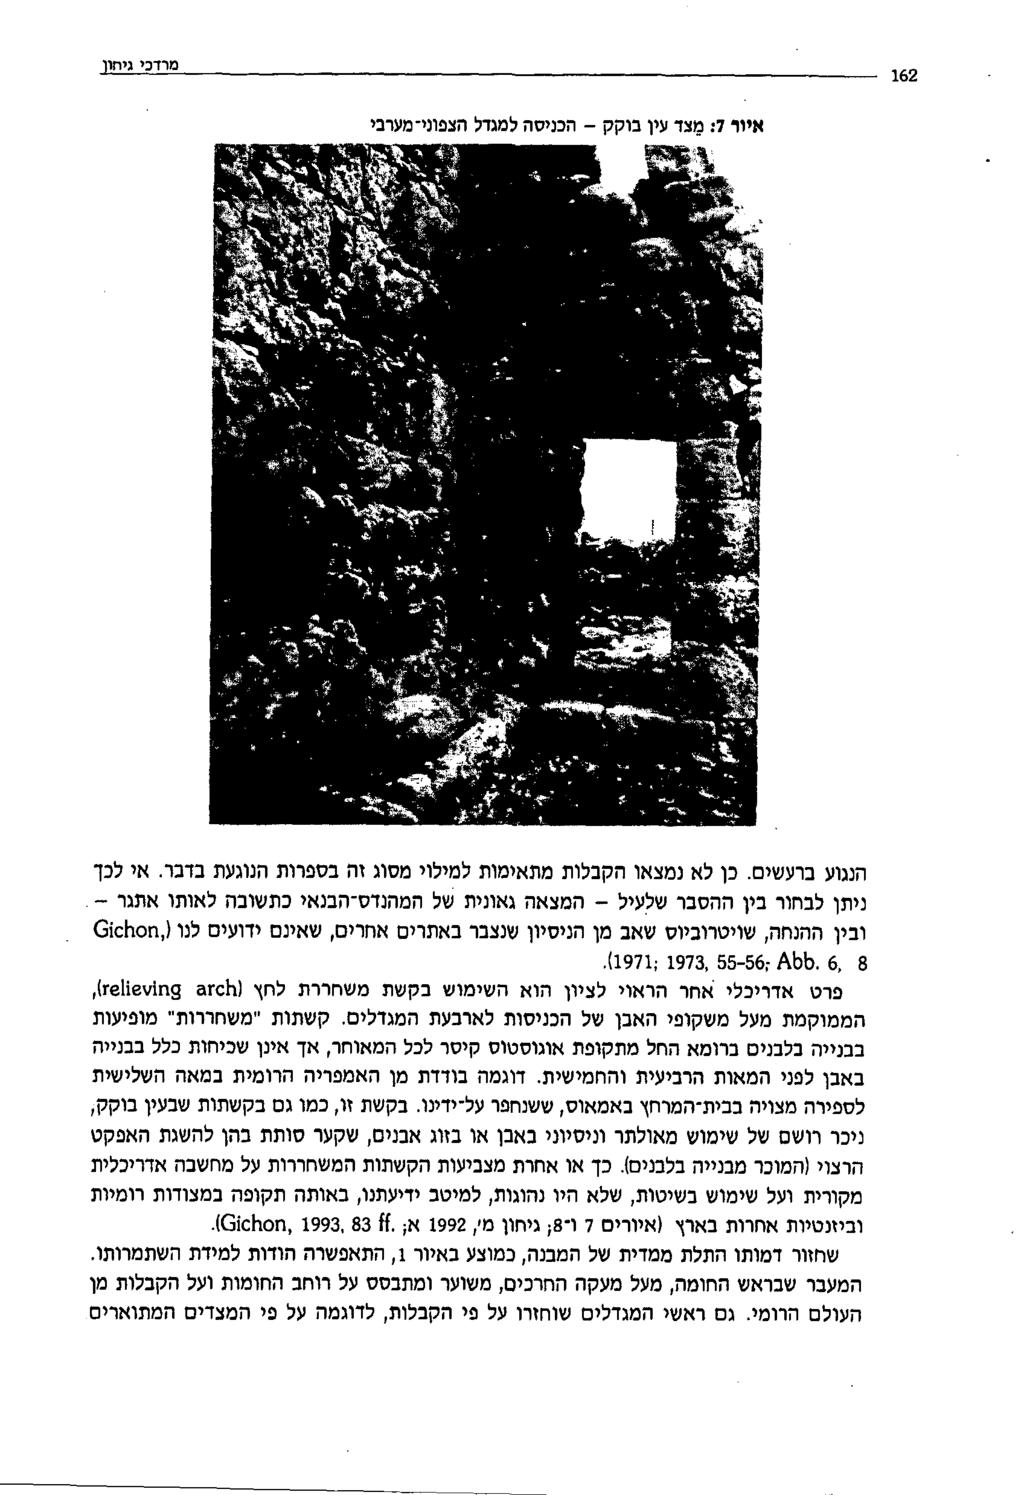 איור 7 : מצדעין בוקק - הכניסהלמגדל הצפוני-מערבי מרדכי גיהון 162 הנגוע ברעשים. כן לאנמצאו הקבלותמתאימות למילוי מסוגזה בספרות הנוגעת בדבר.